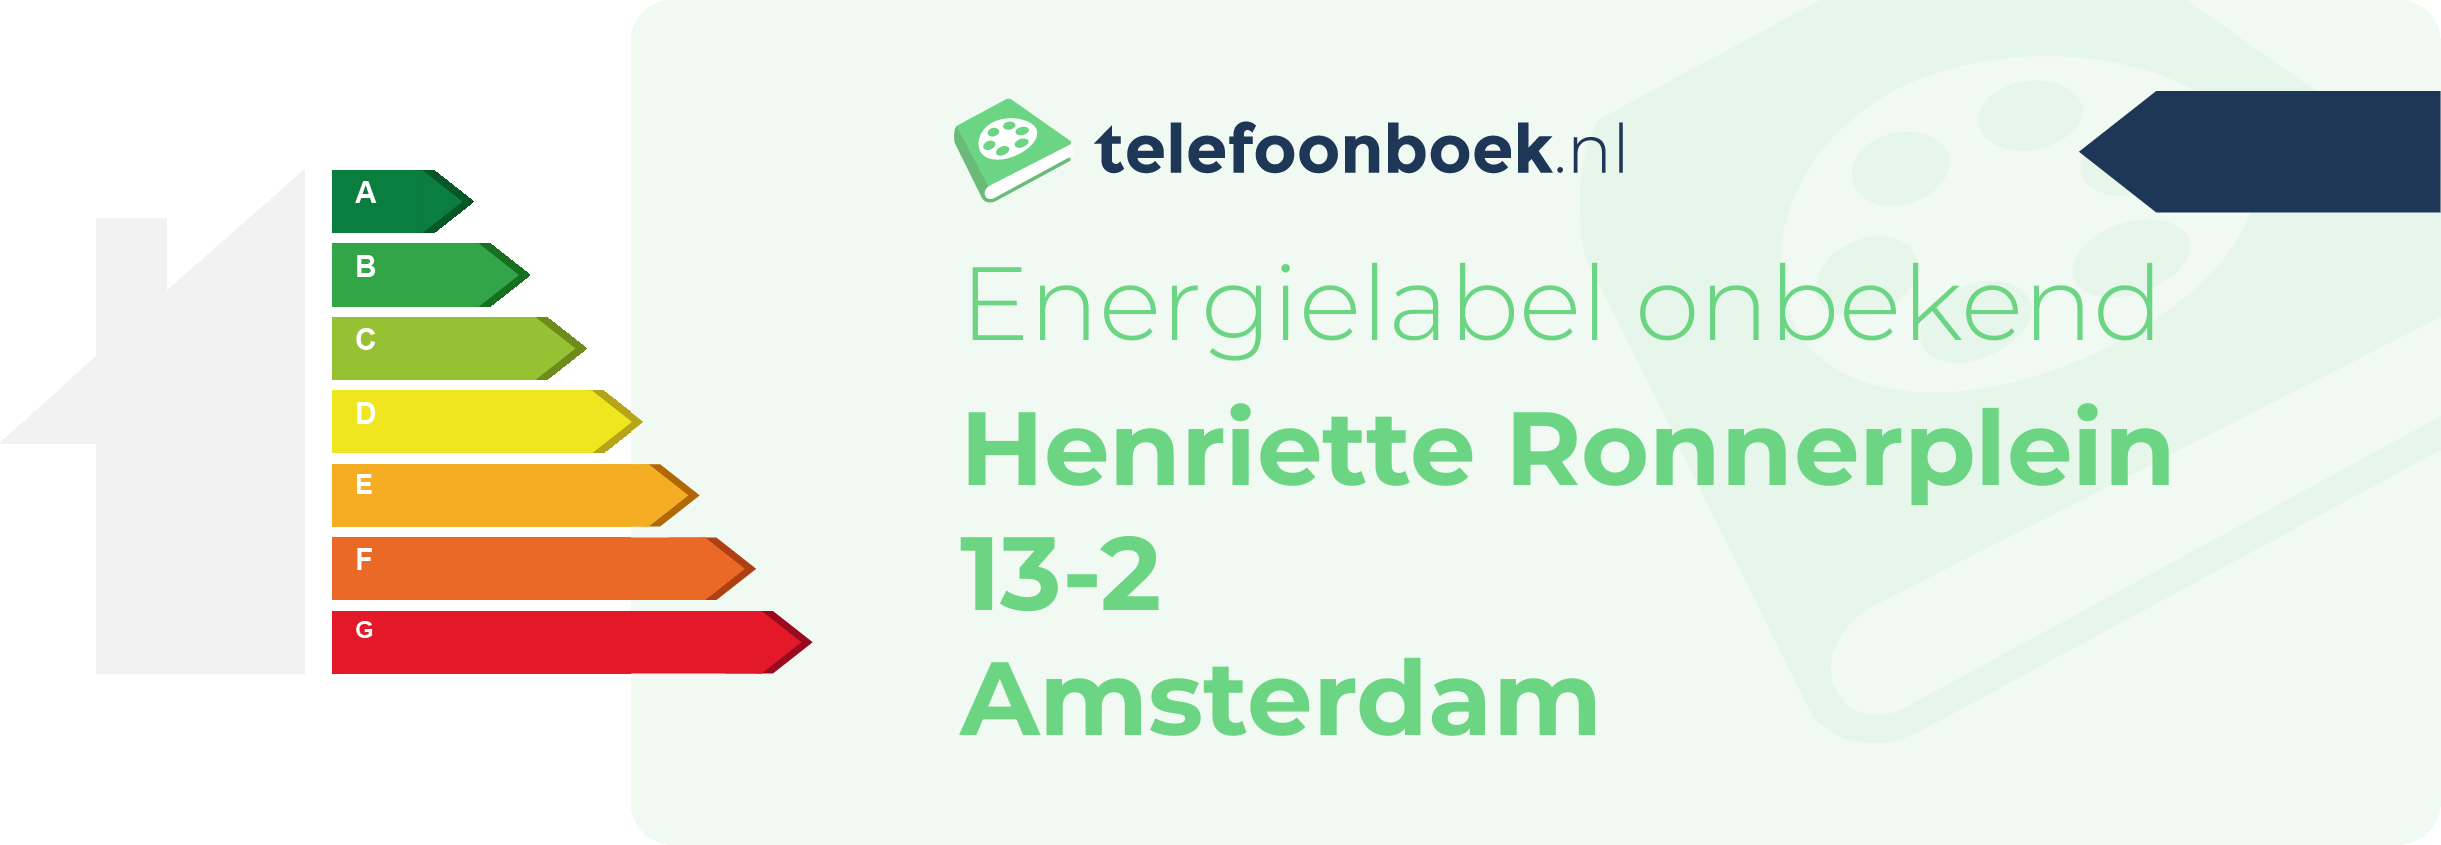 Energielabel Henriette Ronnerplein 13-2 Amsterdam